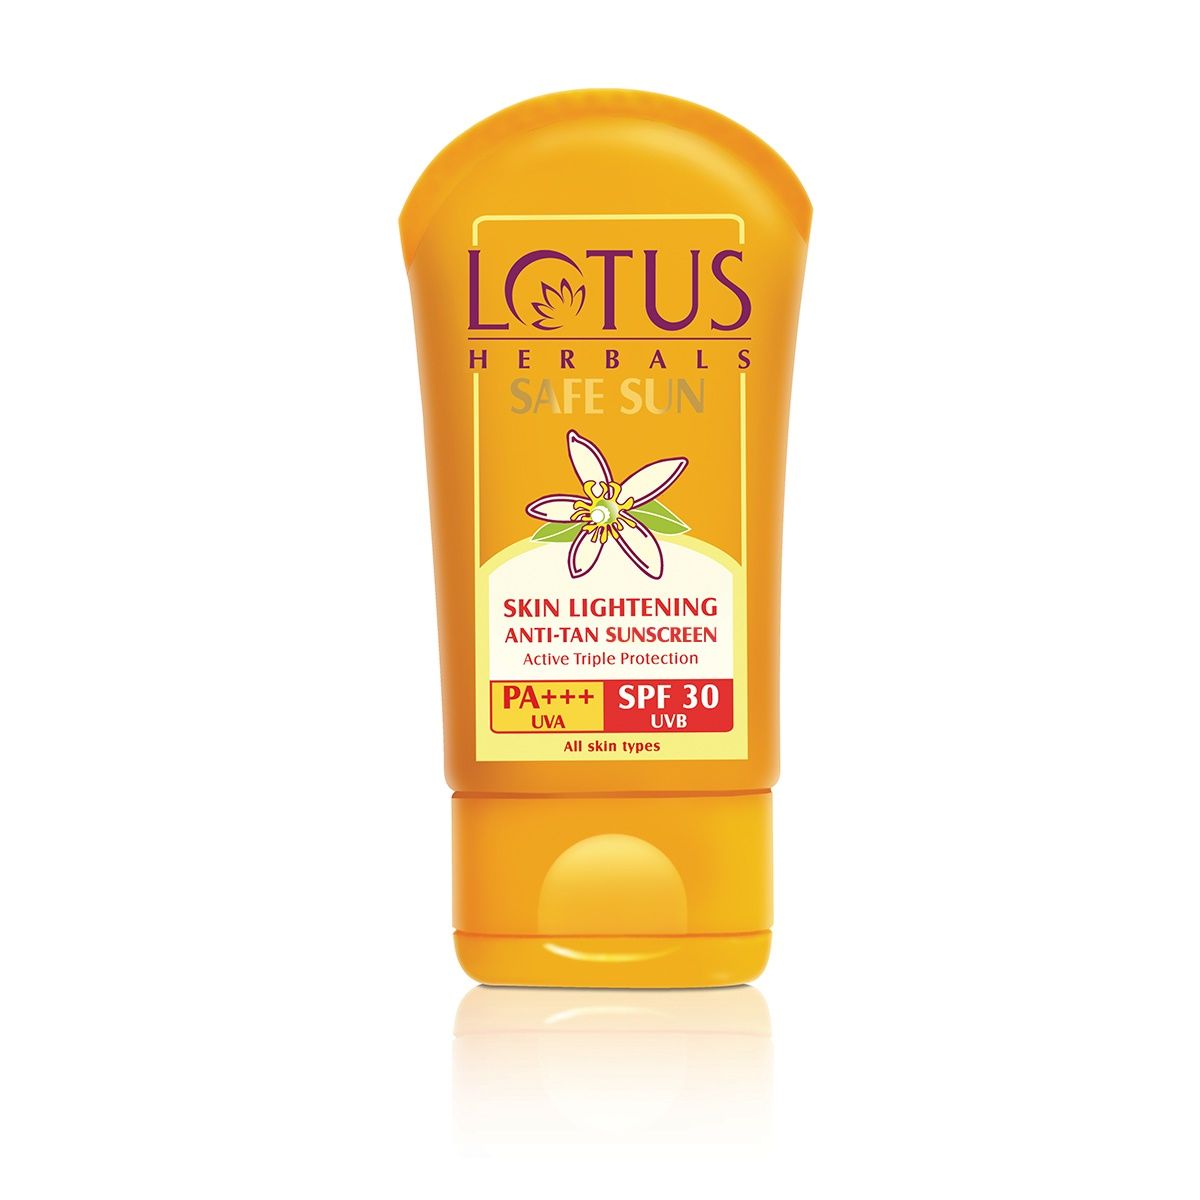 Lotus Herbals Safe Skin Lightening Anti-Tan Sunscreen PA+++ SPF - 30 UVB